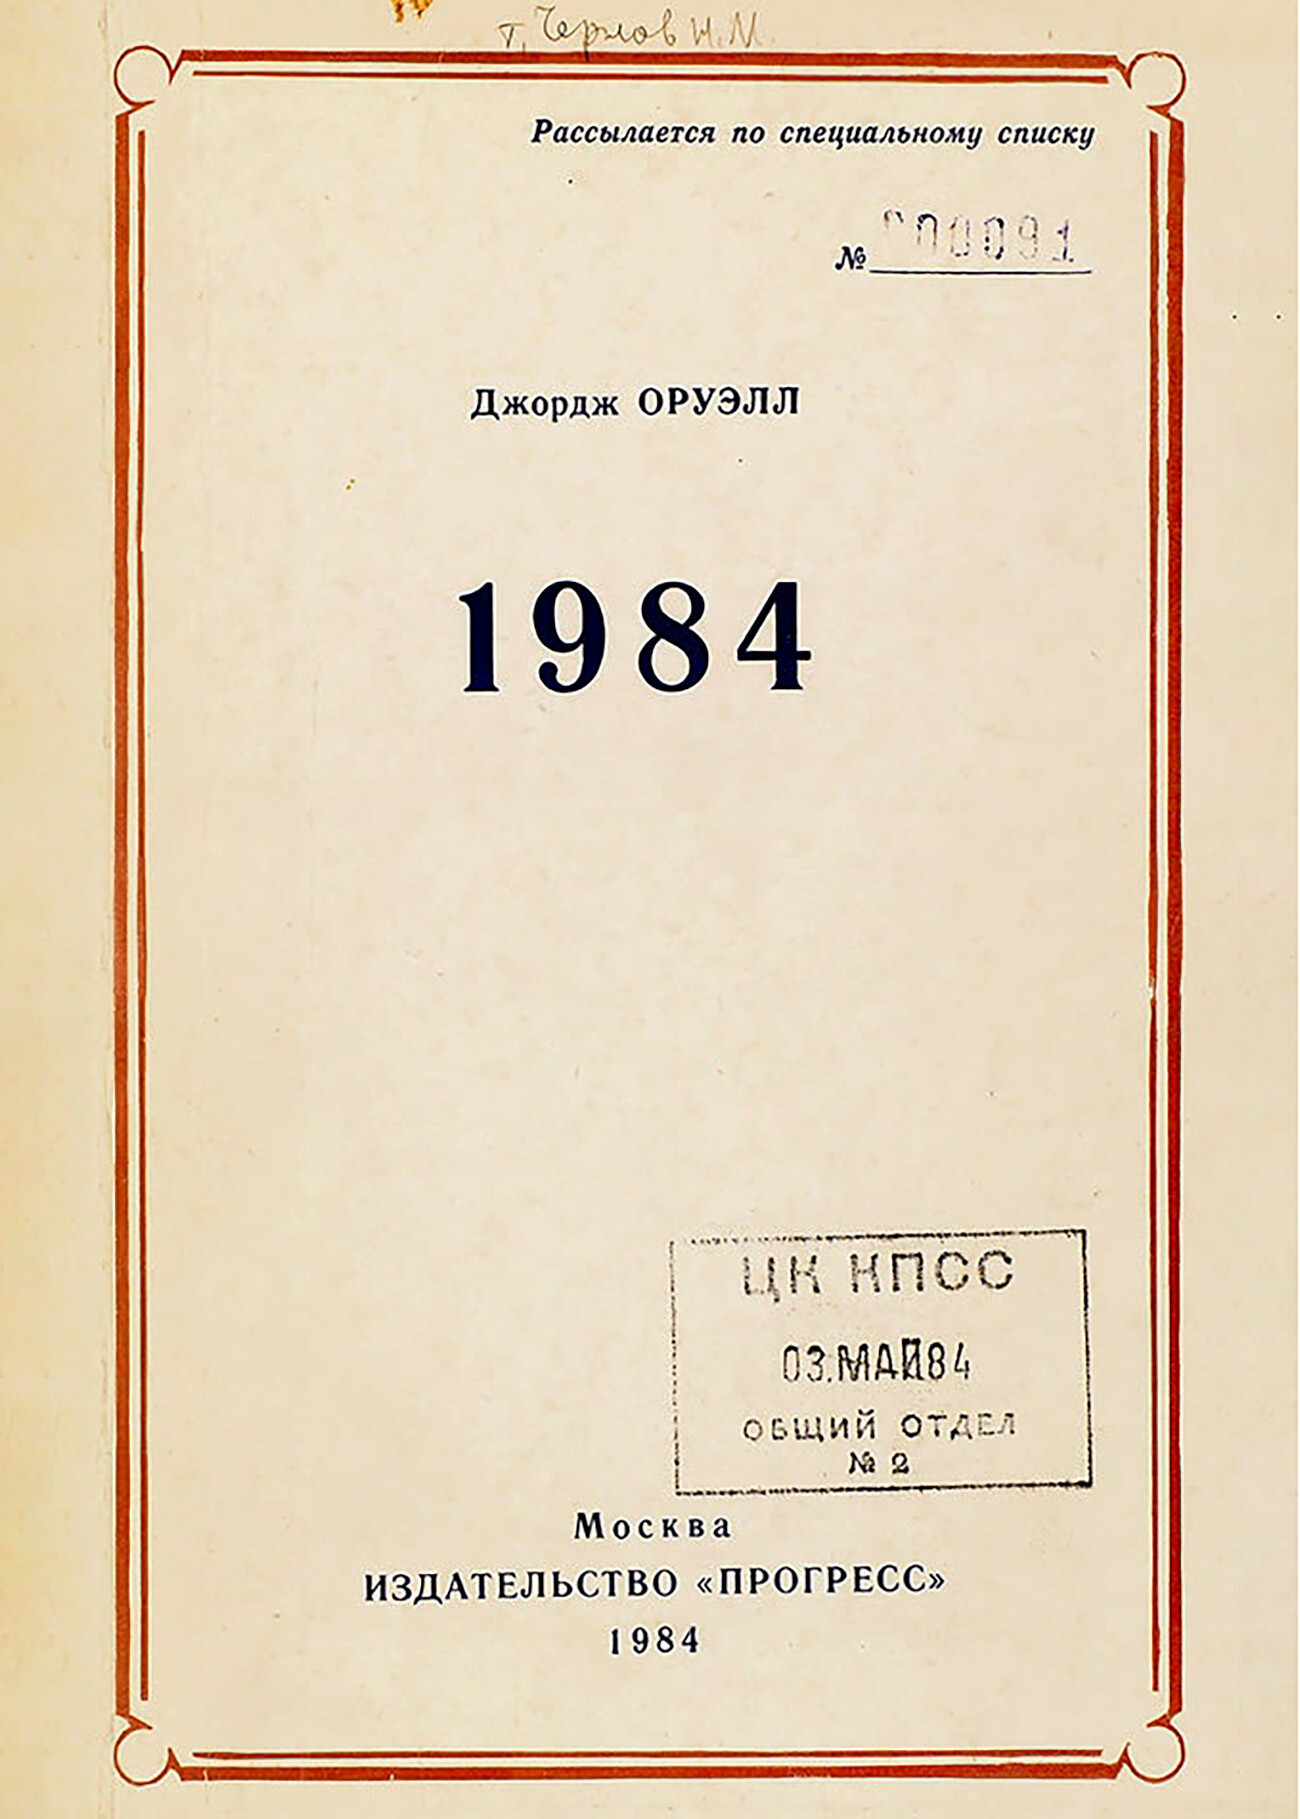 George Orwell. 1984. Ejemplar distribuido según una lista especial aprobada por el Partido Comunista.